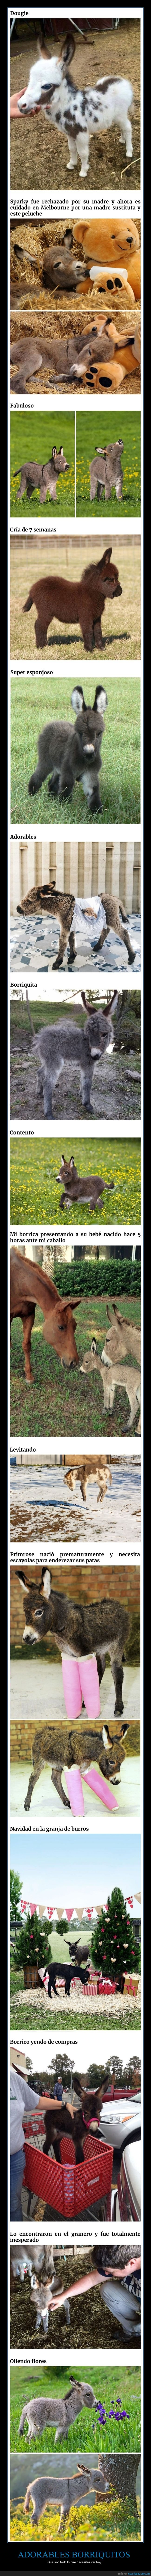 borriquitos,burros,animales